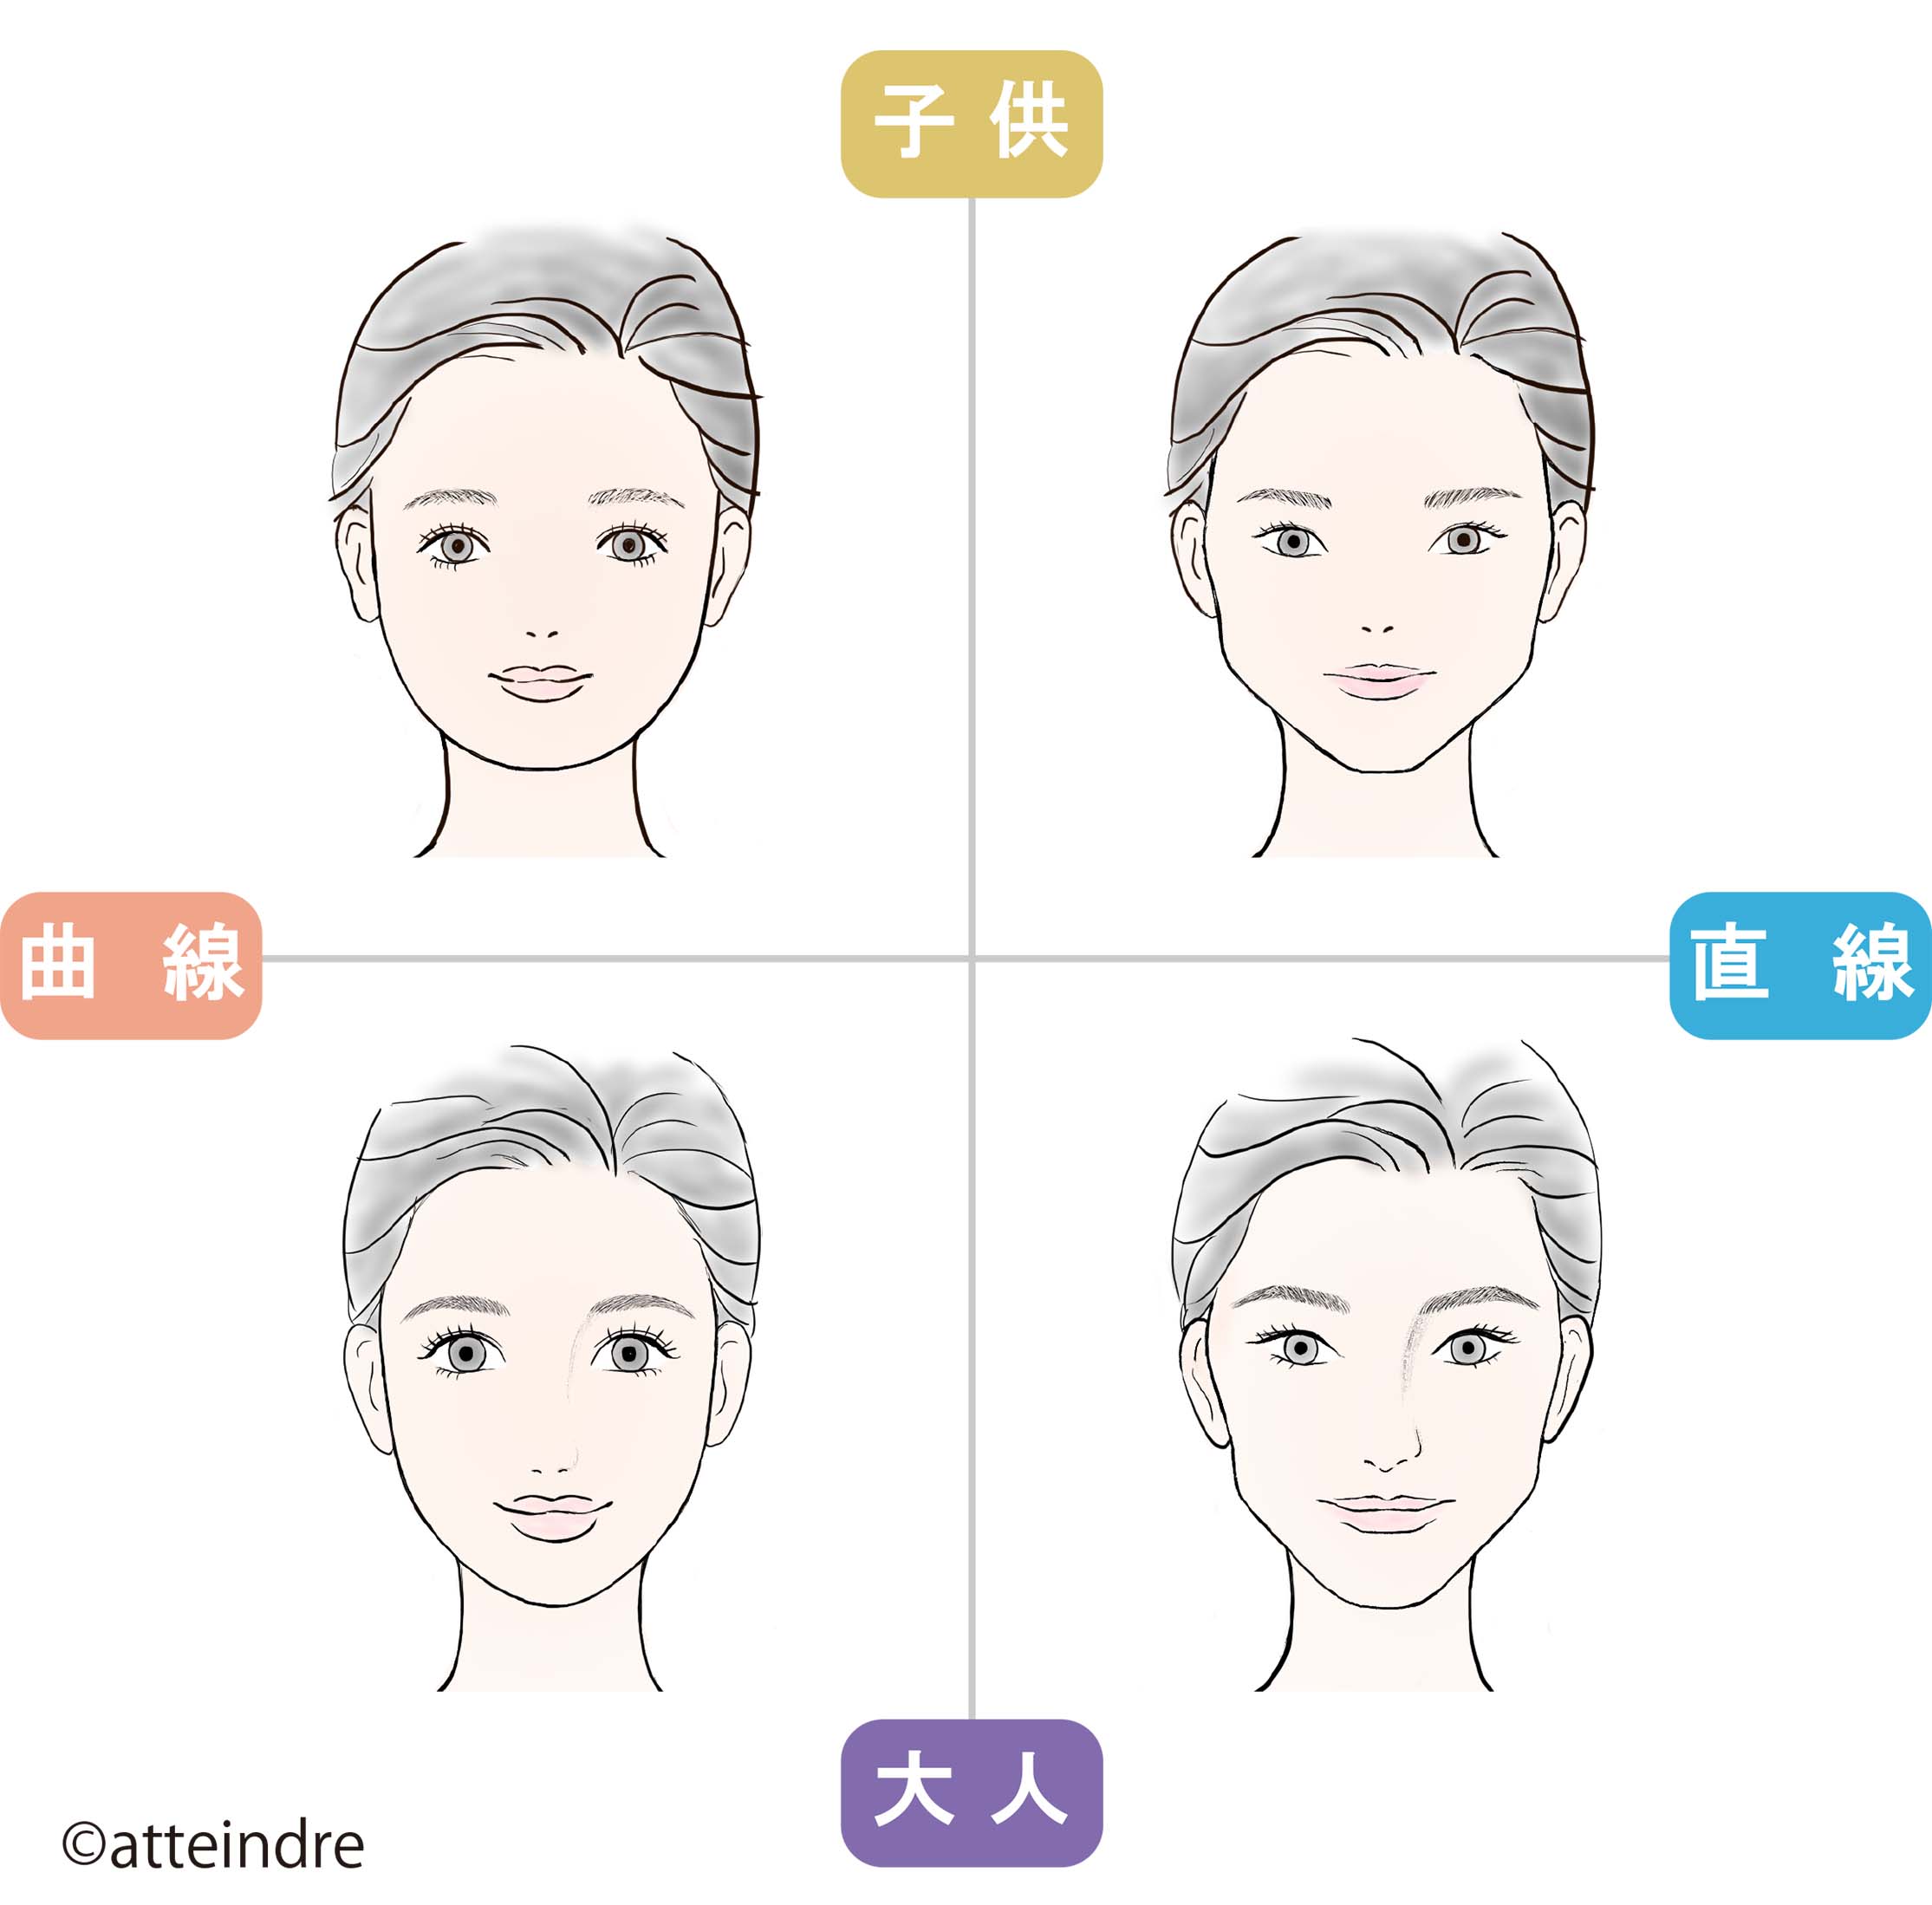 顔タイプ診断 パーソナルカラー診断 イメージコンサルティングは大阪のアタンドル